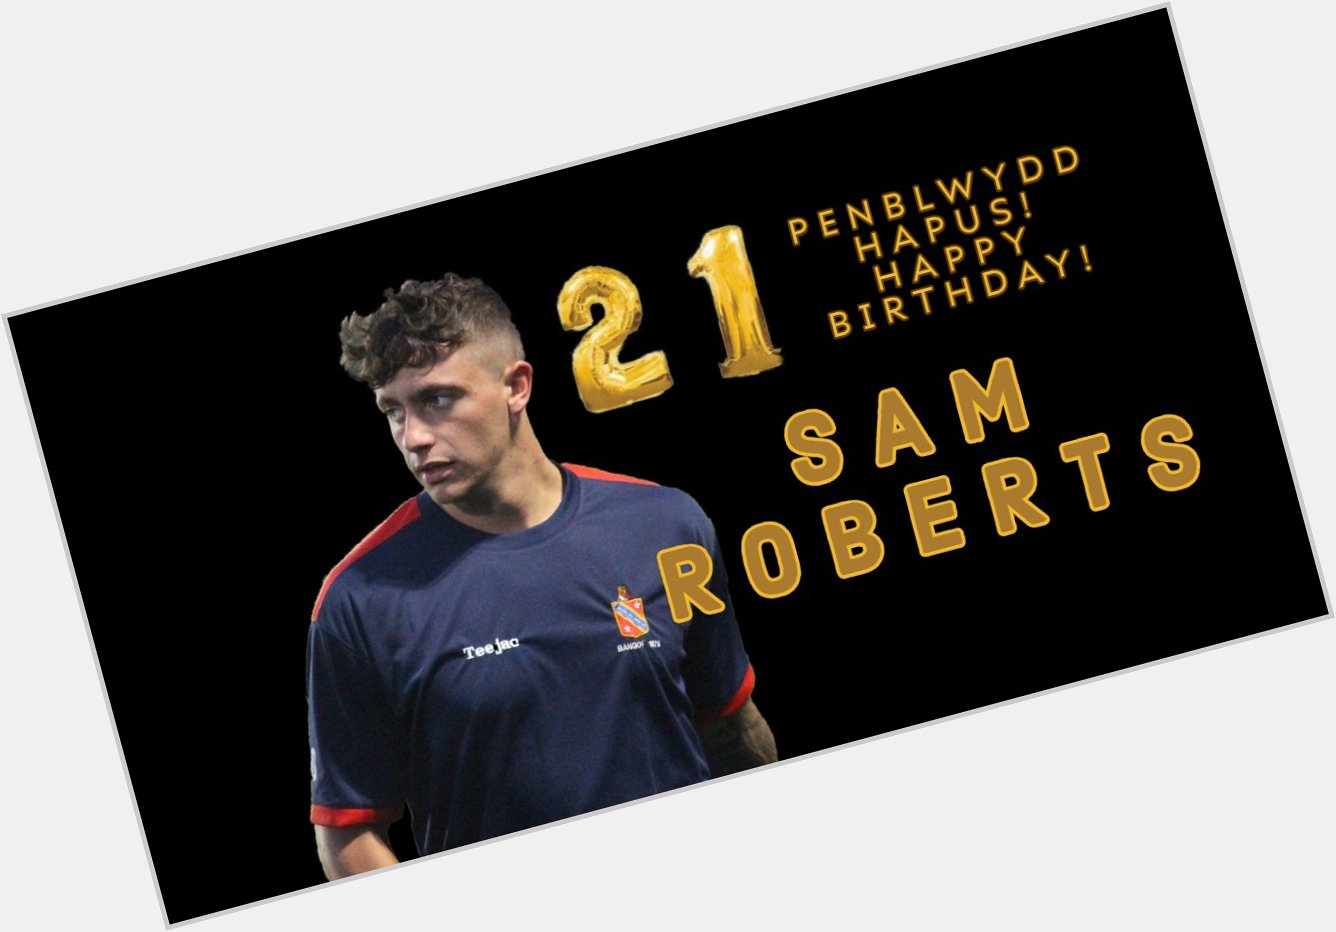 Penblwydd hapus i / Happy birthday to Sam Roberts! 